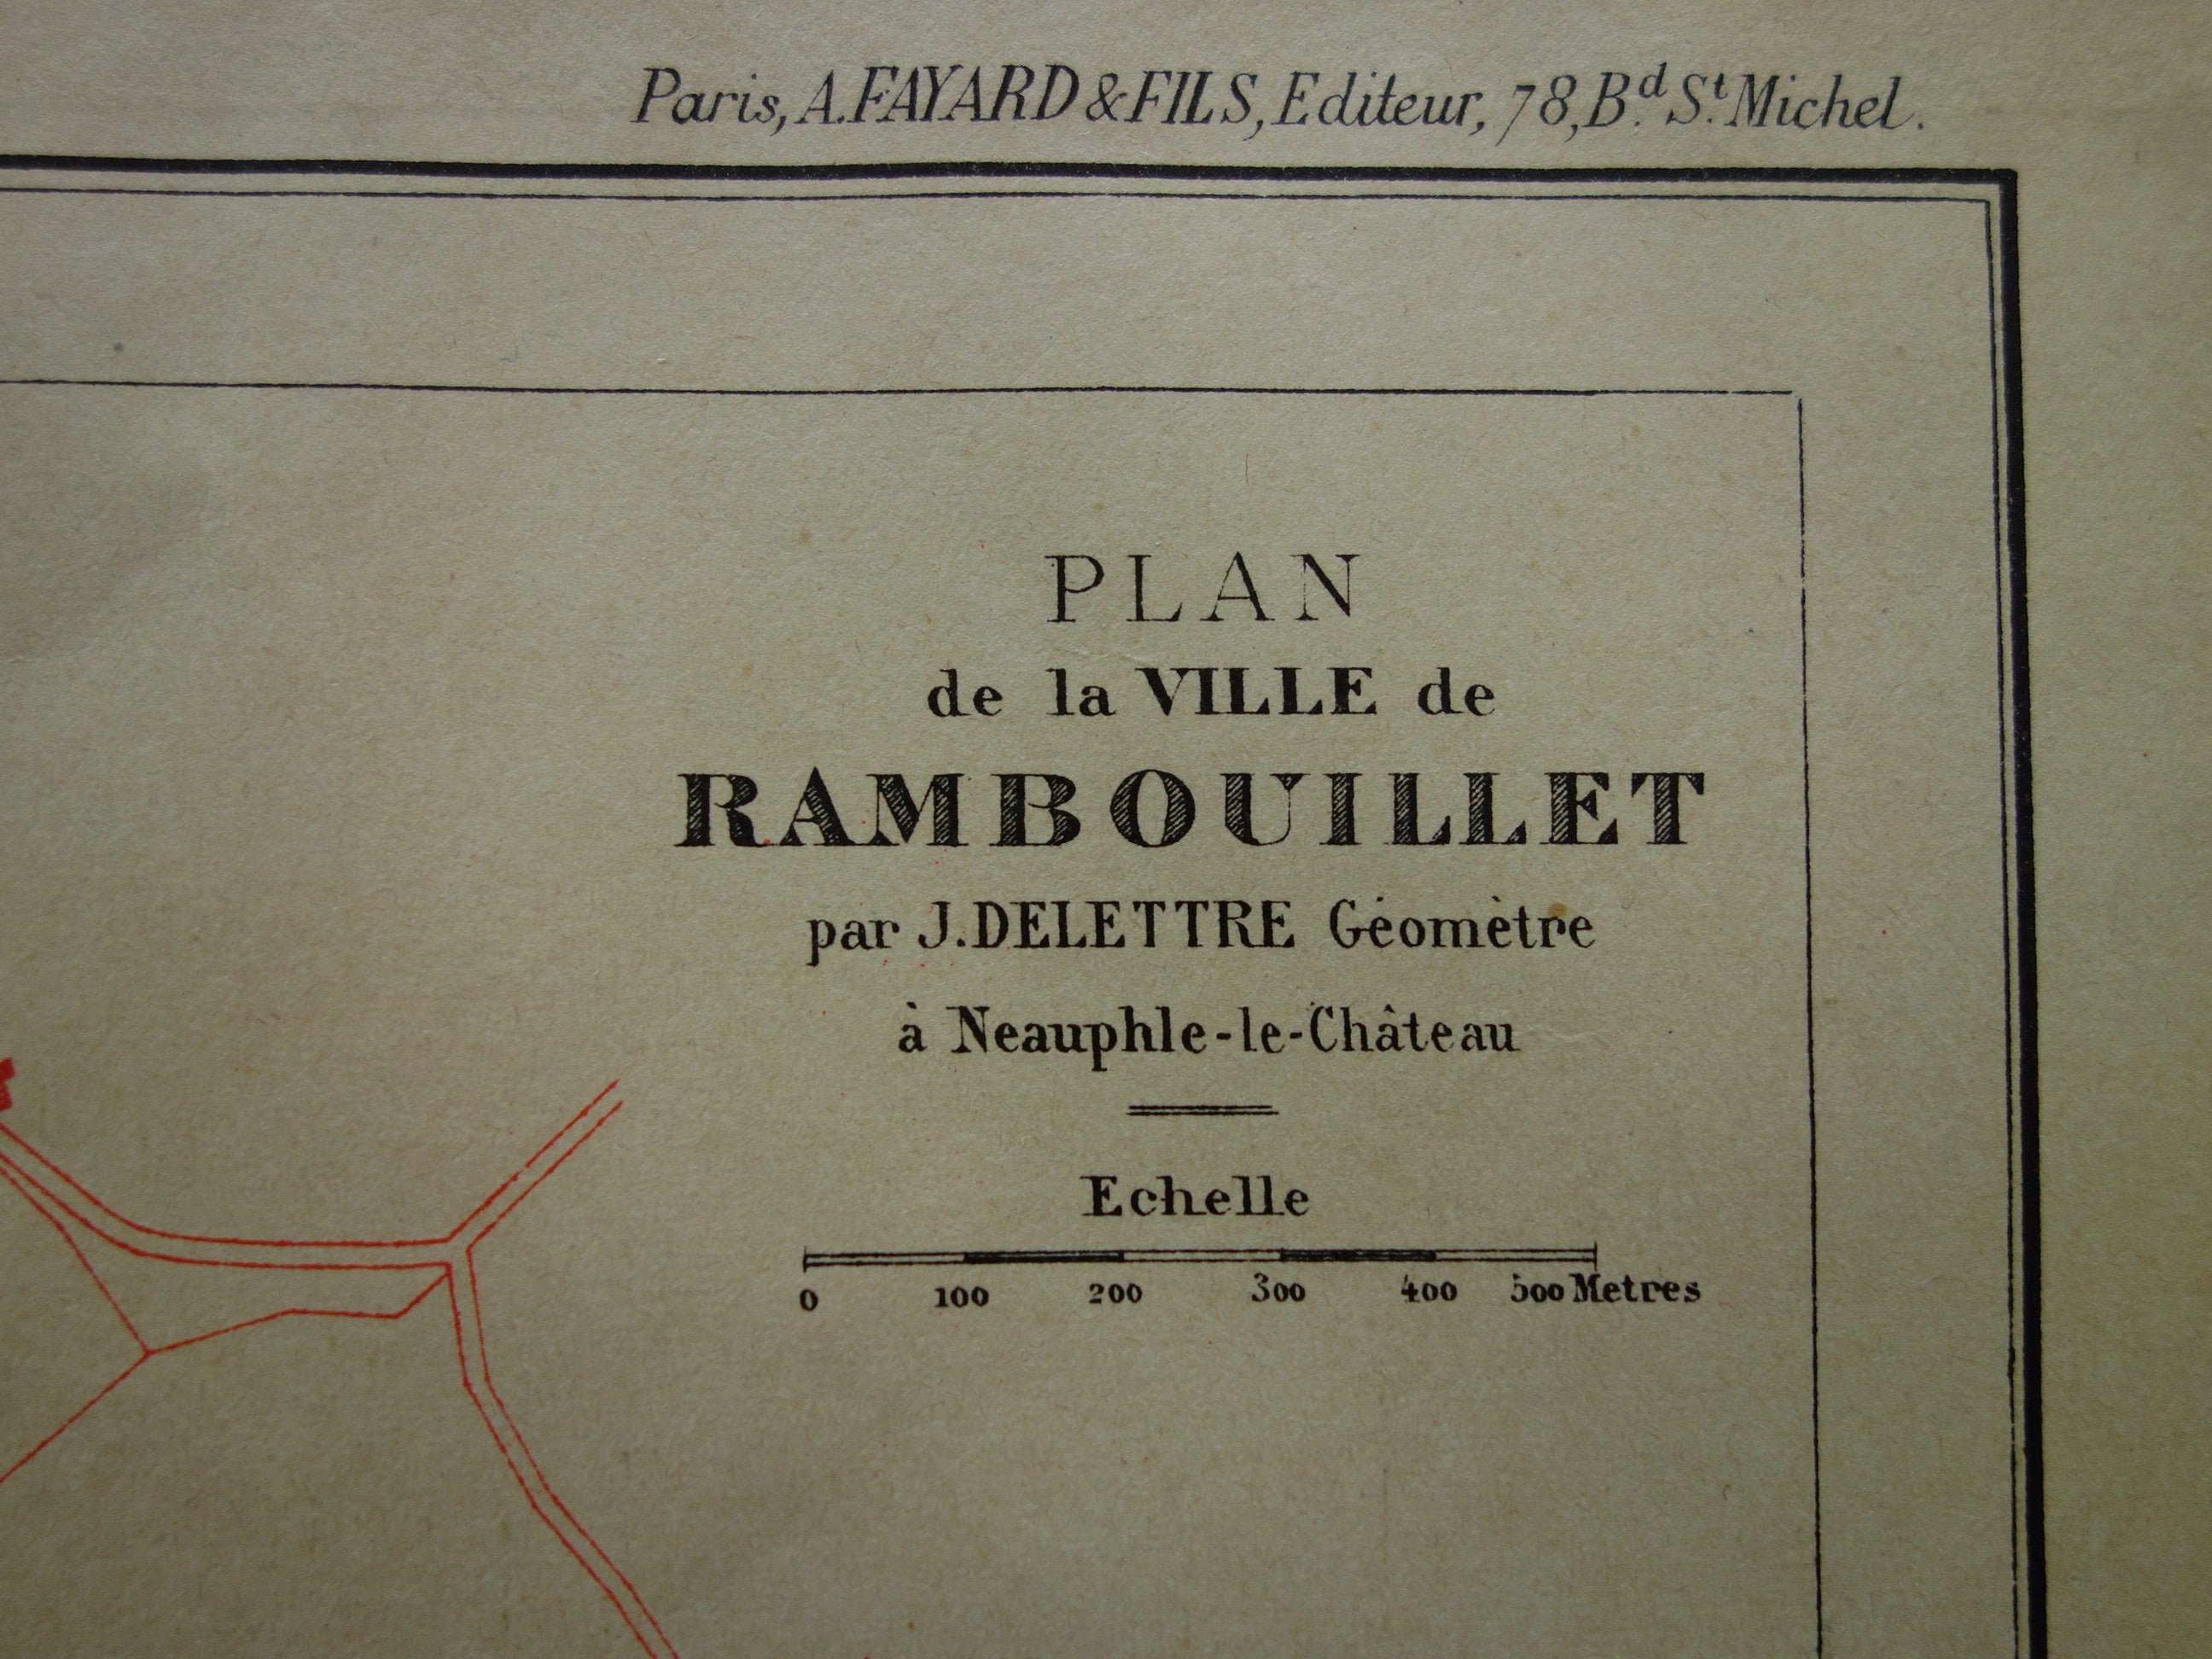 Rambouillet Old Map Of Rambouillet 1896 Original Antique French City Plan Vieille Carte De Ville Vintage Maps Poster 23x30C 9x12